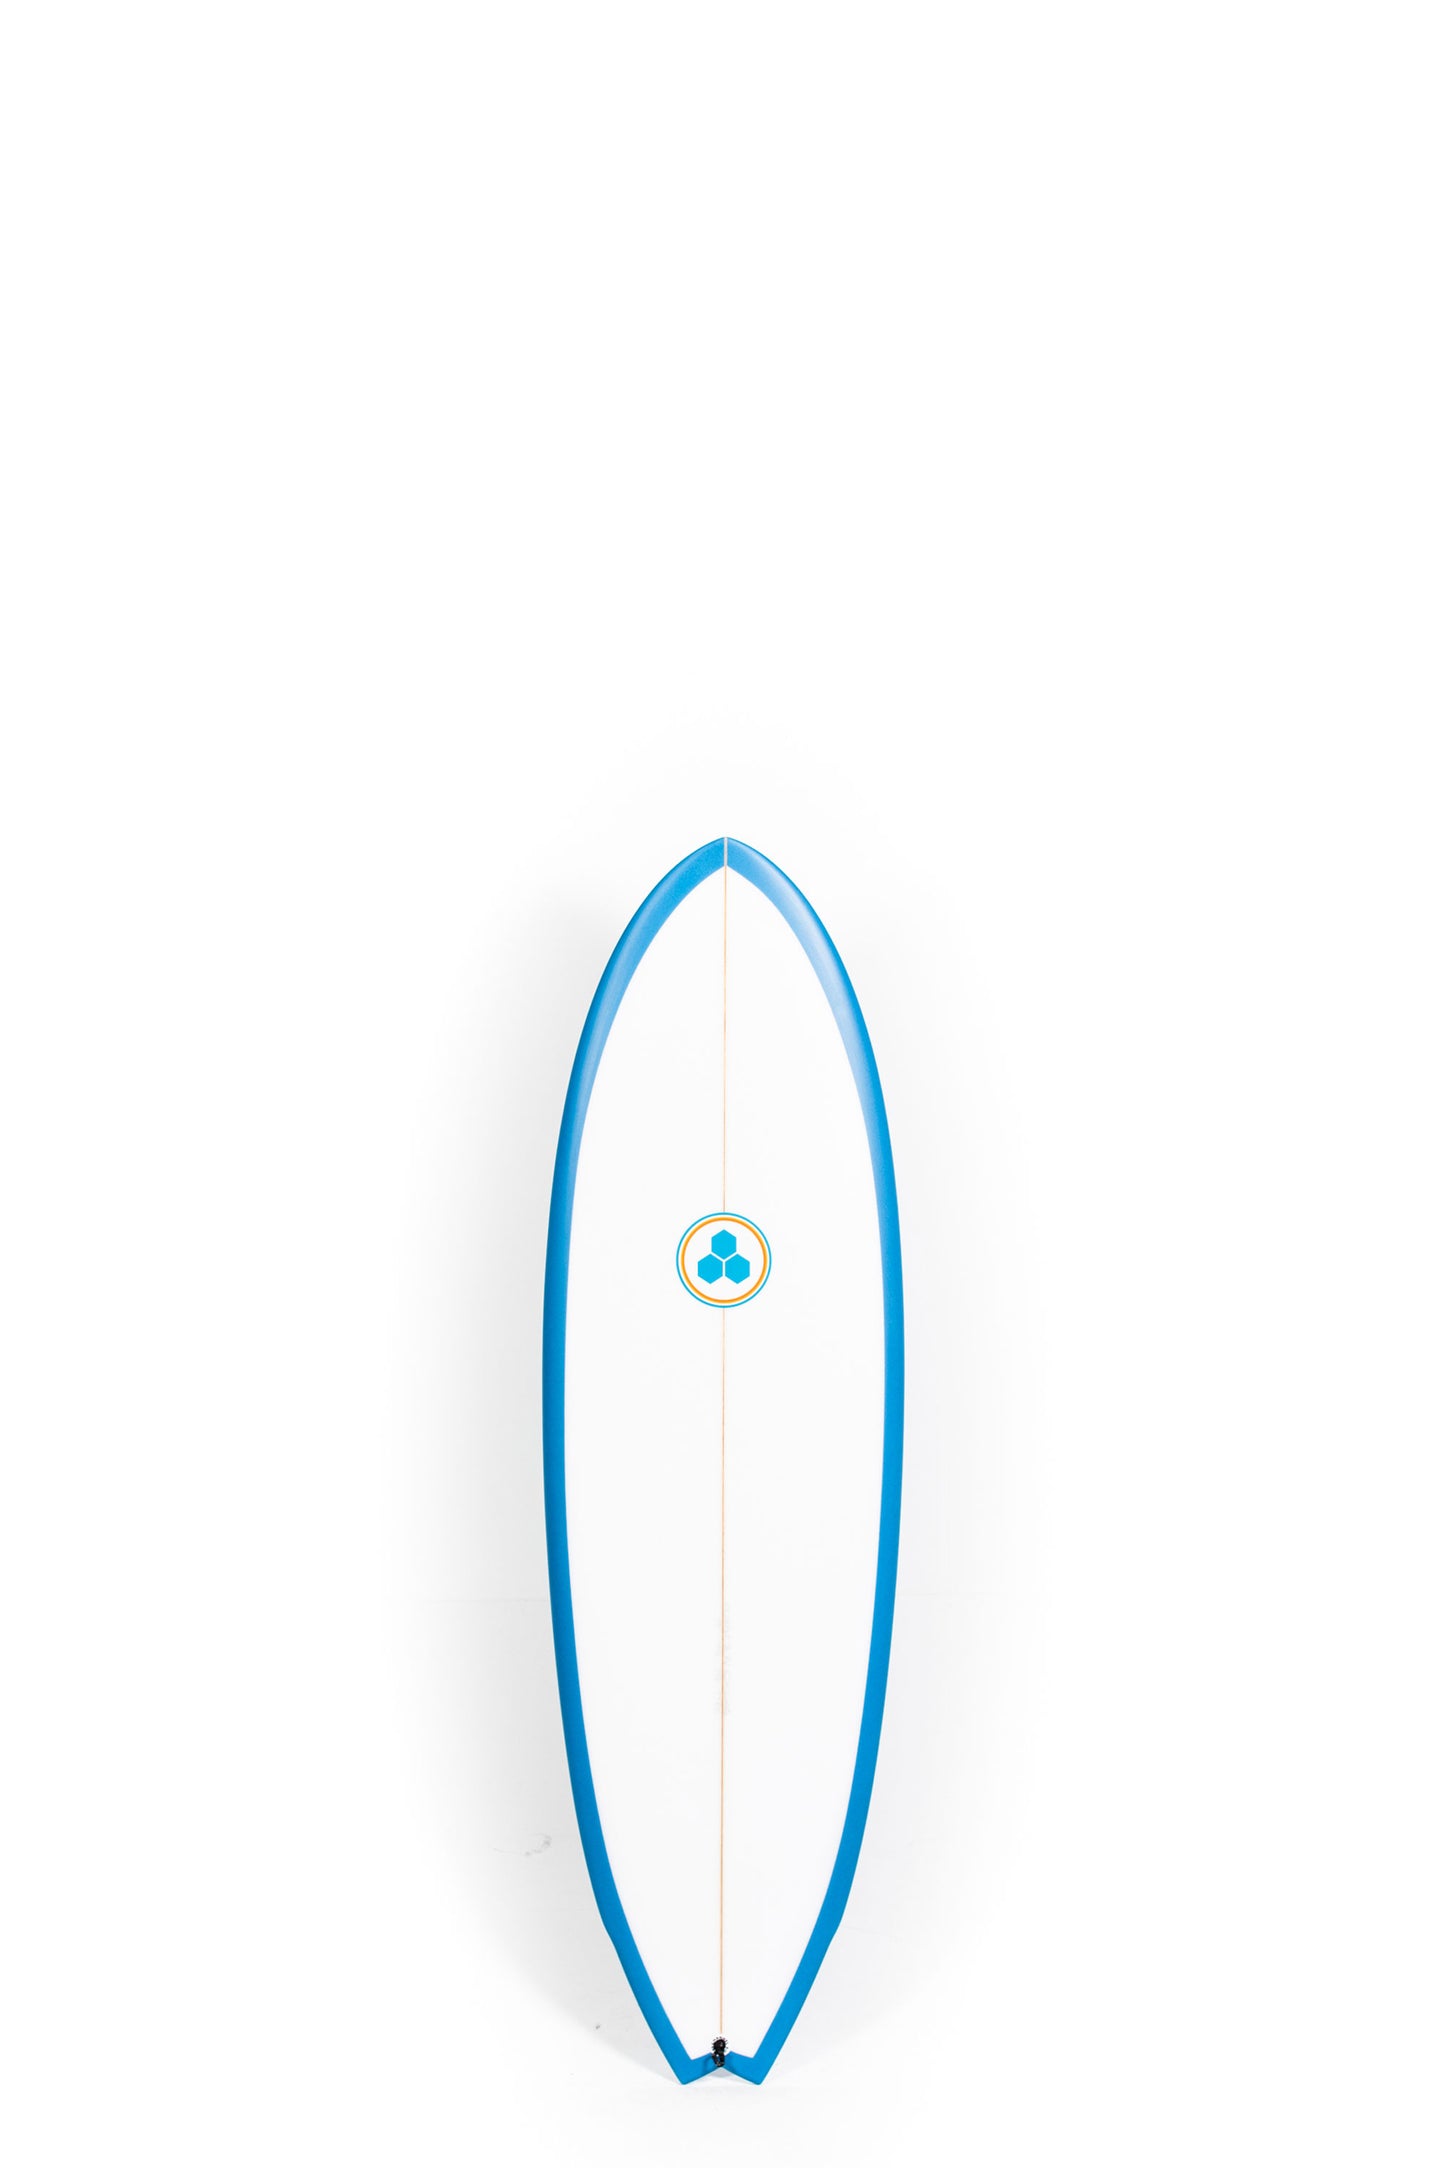 Pukas Surf Shop - Channel Islands - G-Skate by Al Merrick - 5'5" x 19 1/8 x 2 3/8 - 27.8L - CI28737